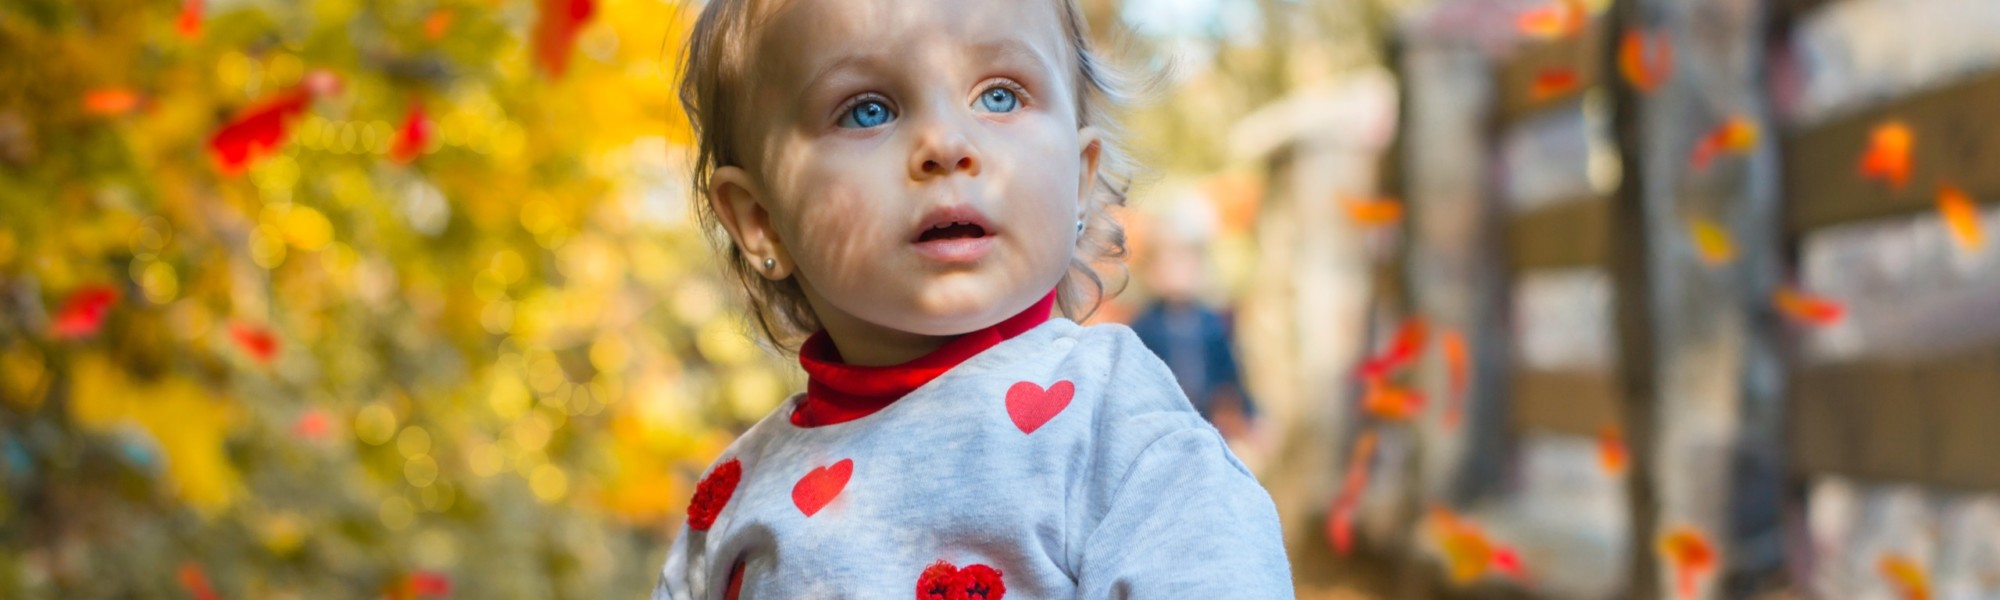 Kuvassa on pieni tyttö, jolla on siniset silmät ja sydänkuvioitu paita. Taustalla näkyy syksyinen luono ja ruskan värjäämiä lehtiä. Tyttö pitää kädessään keltaista vaahteranlehteä.